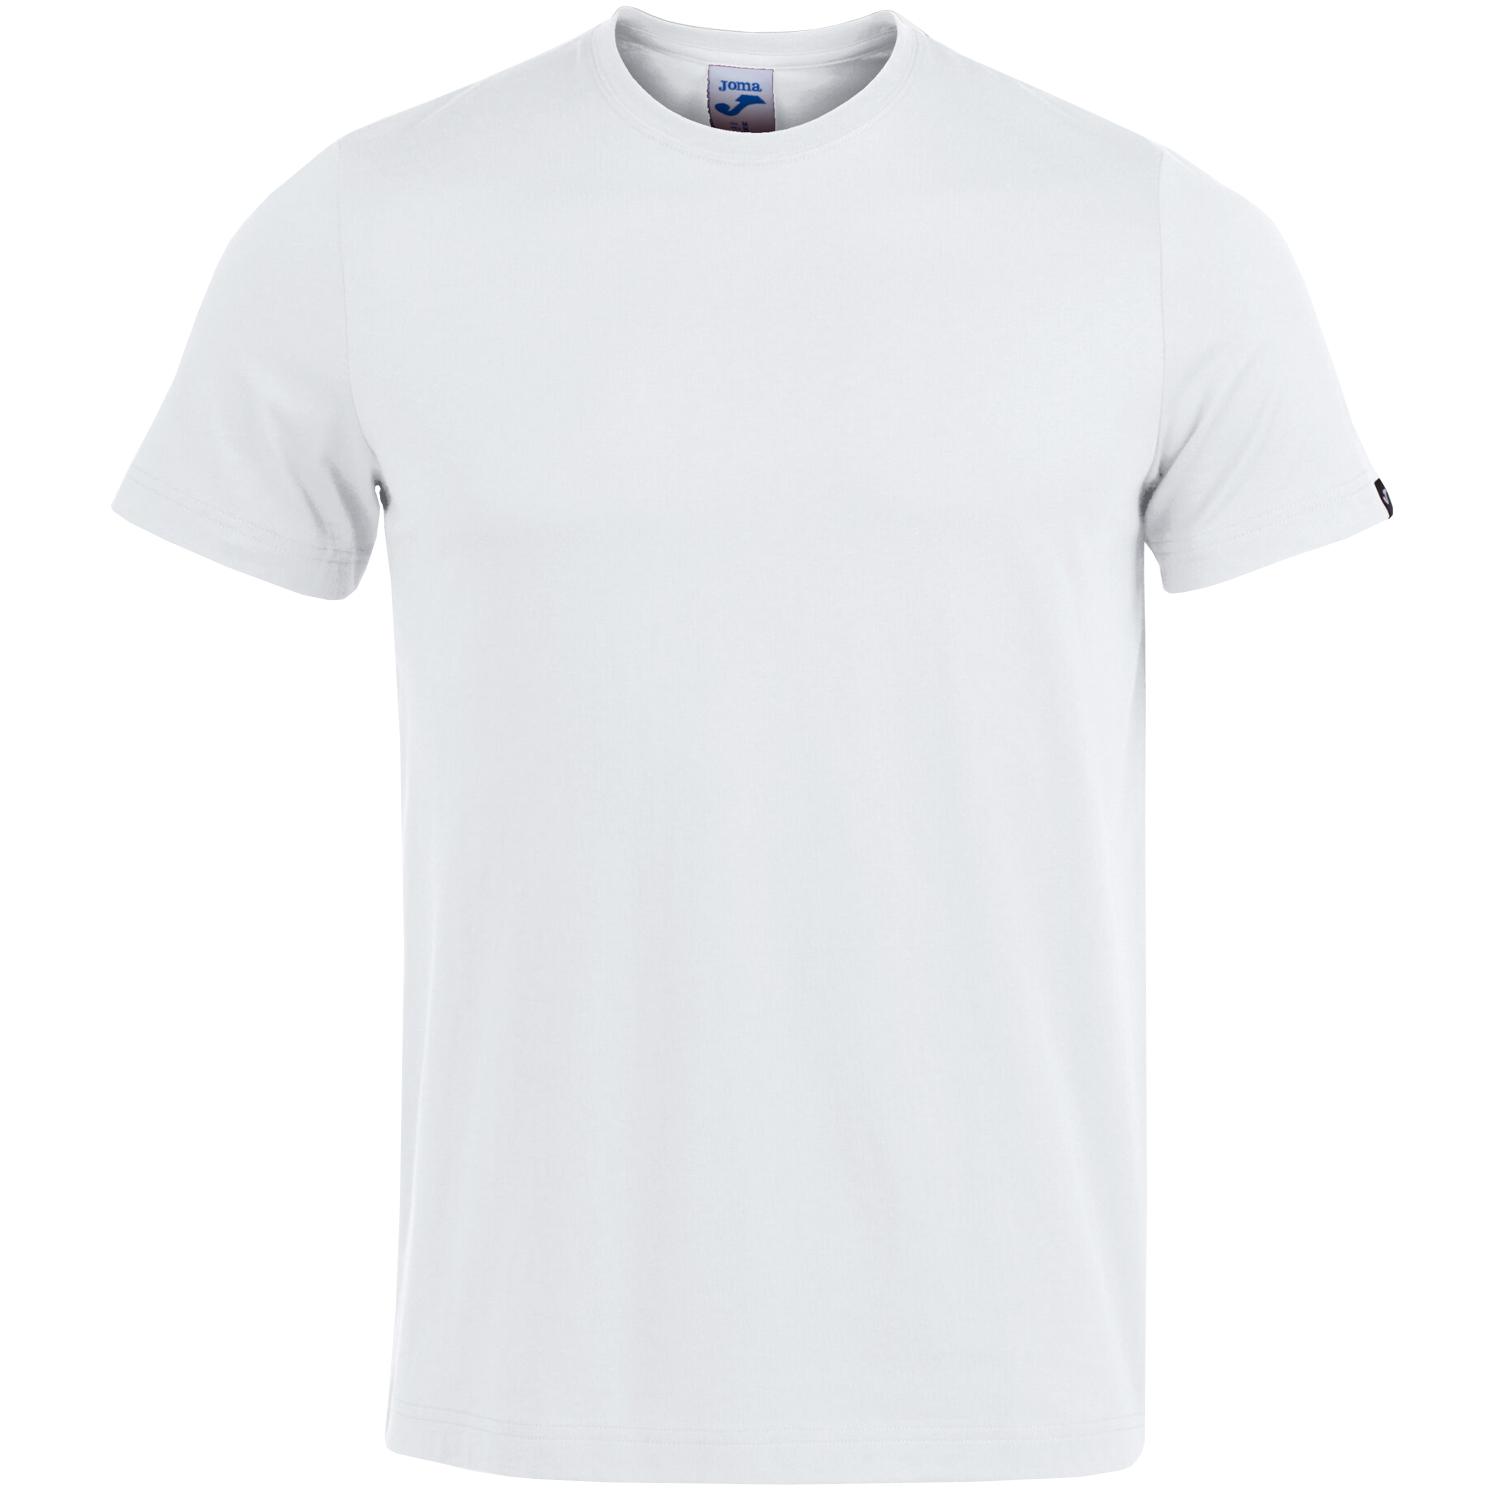 Joma Desert Tee, Mens white T-shirt